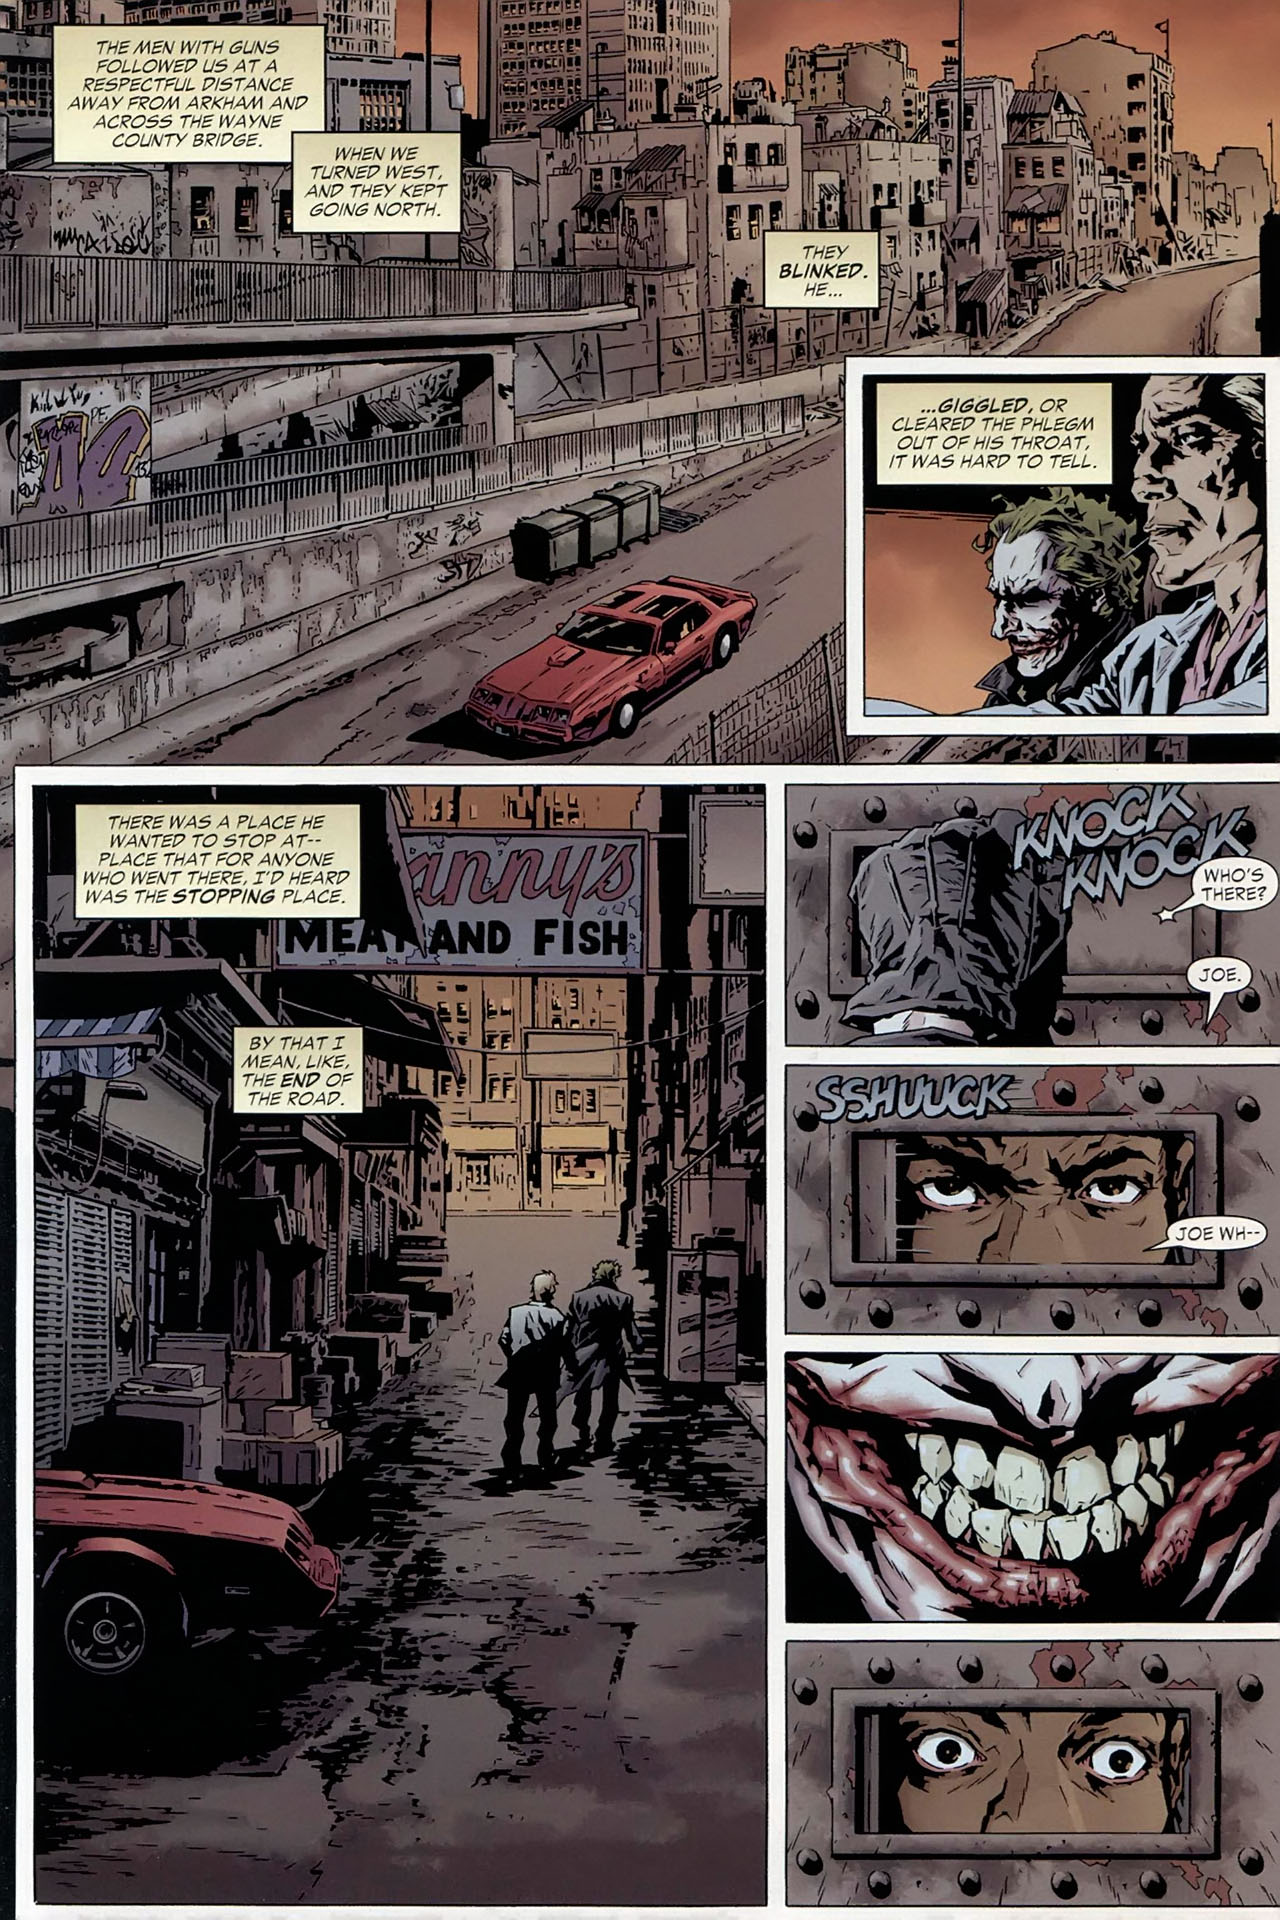 The Joker - 1 of 4